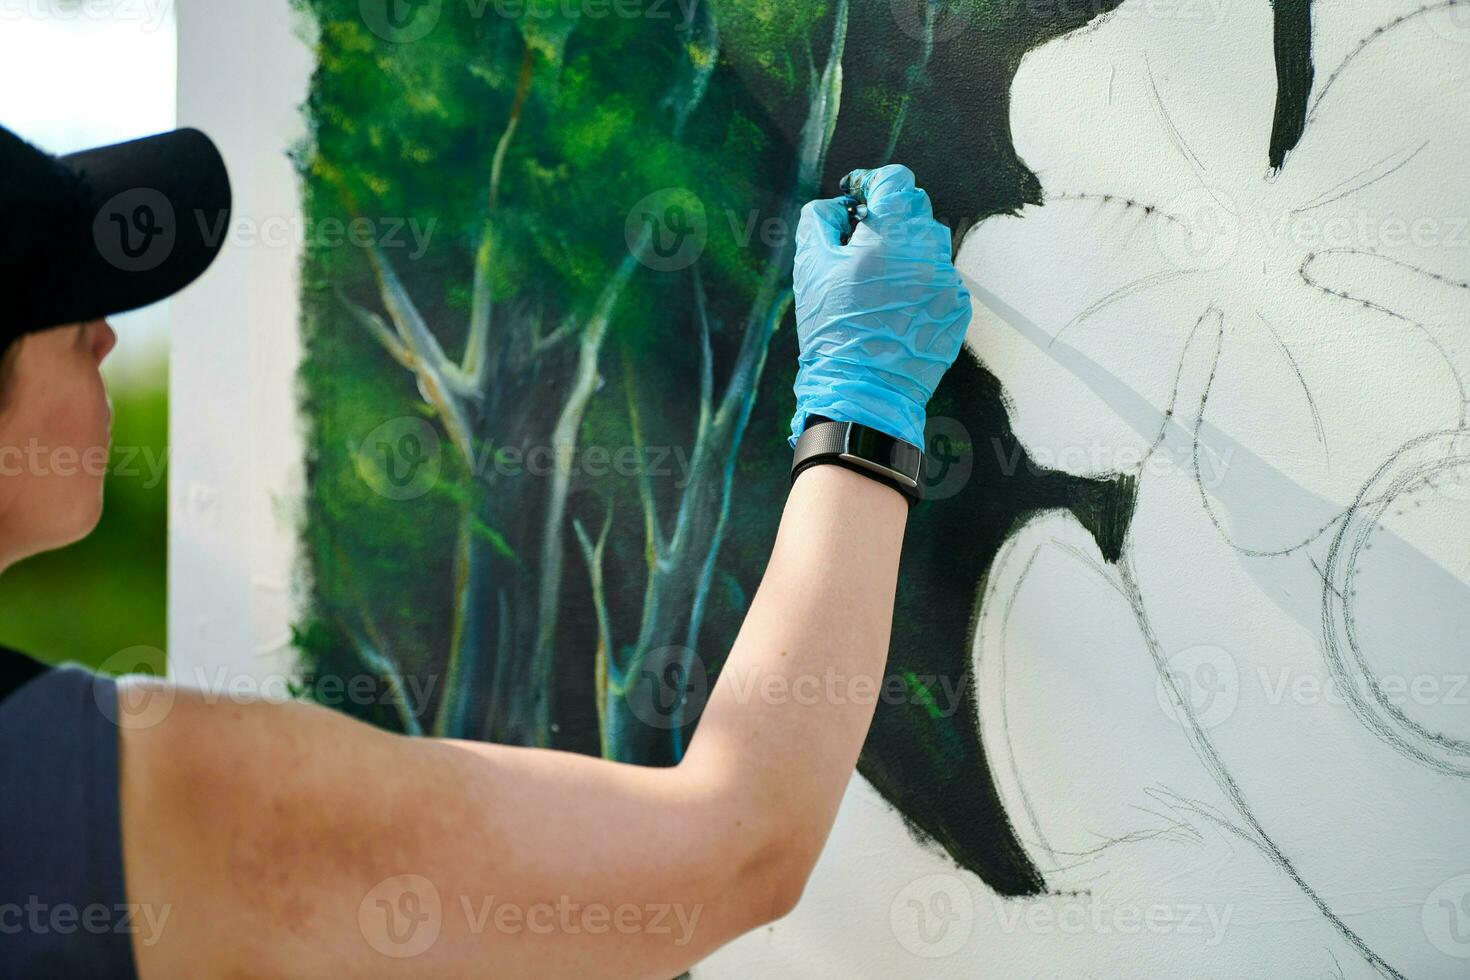 menina artista mão detém pintura escova e desenha verde natureza panorama em tela de pintura foto